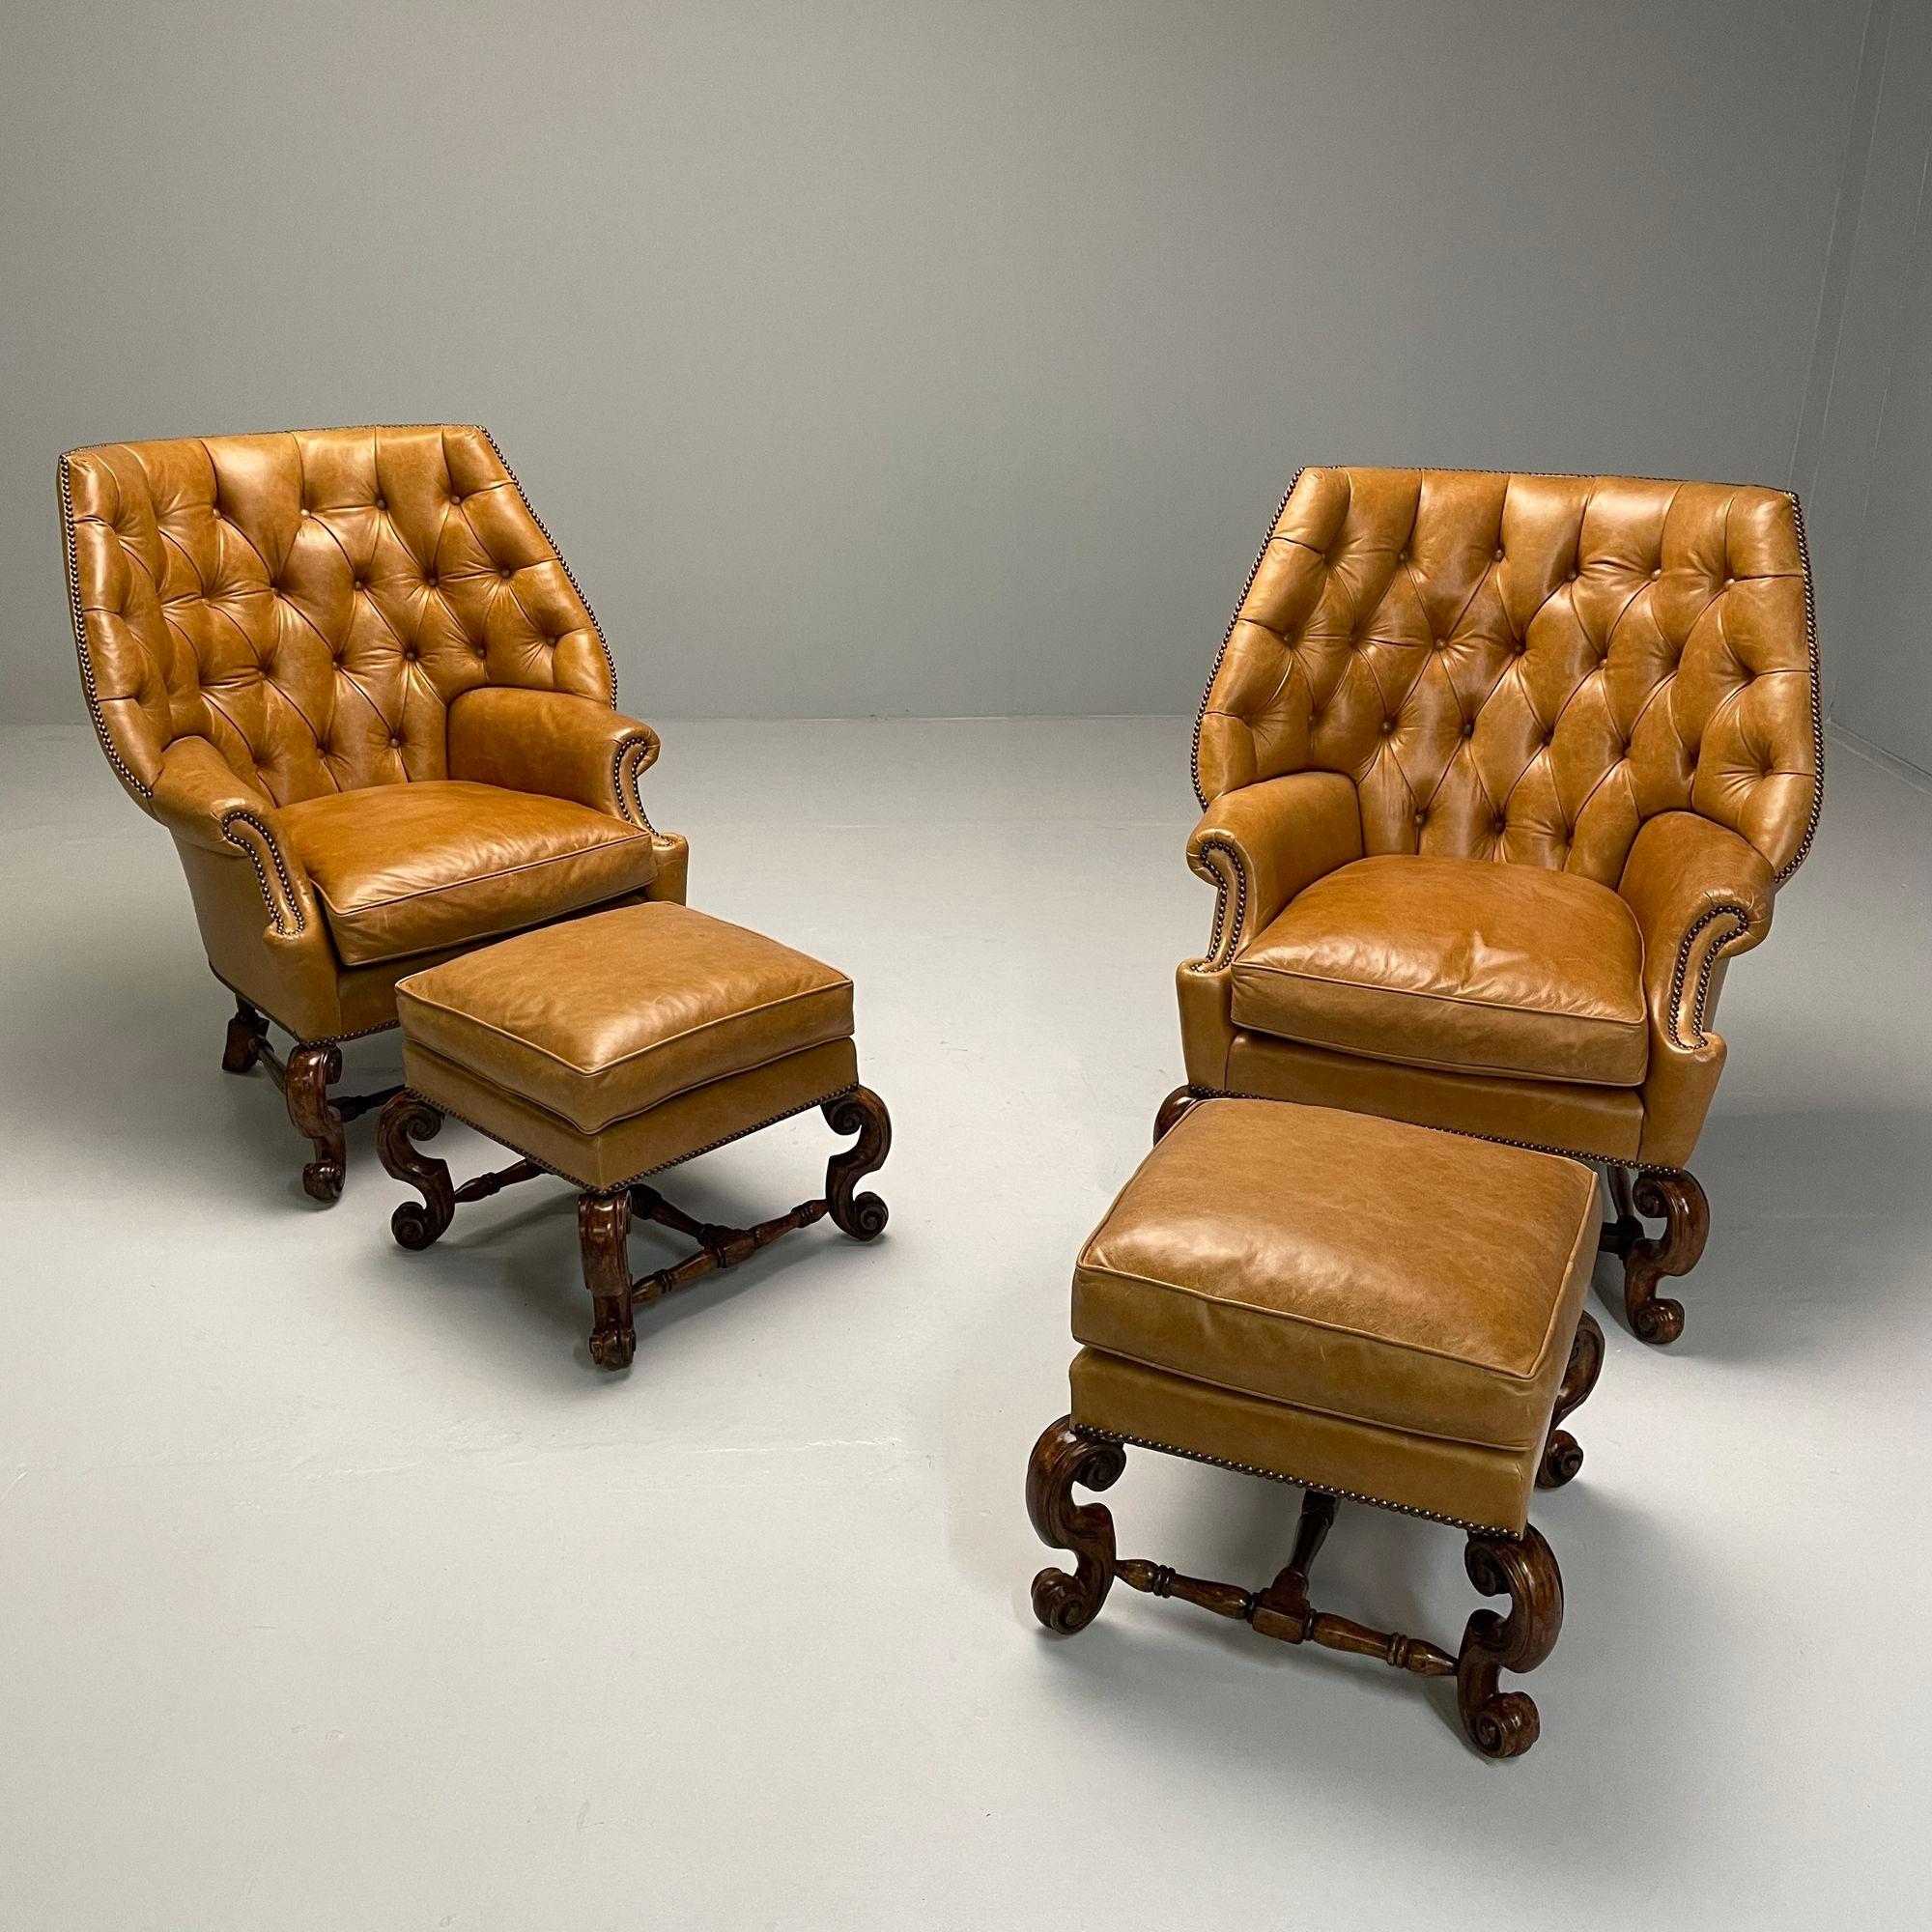 Georgian, Large Lounge Chairs, Ottomans, Tan Leather, USA 2000s

Paire de grands fauteuils en cuir à dossier touffeté et deux ottomans assortis. Ces fauteuils ont des dossiers généreux et enveloppants, des têtes de clous et des coussins d'assise